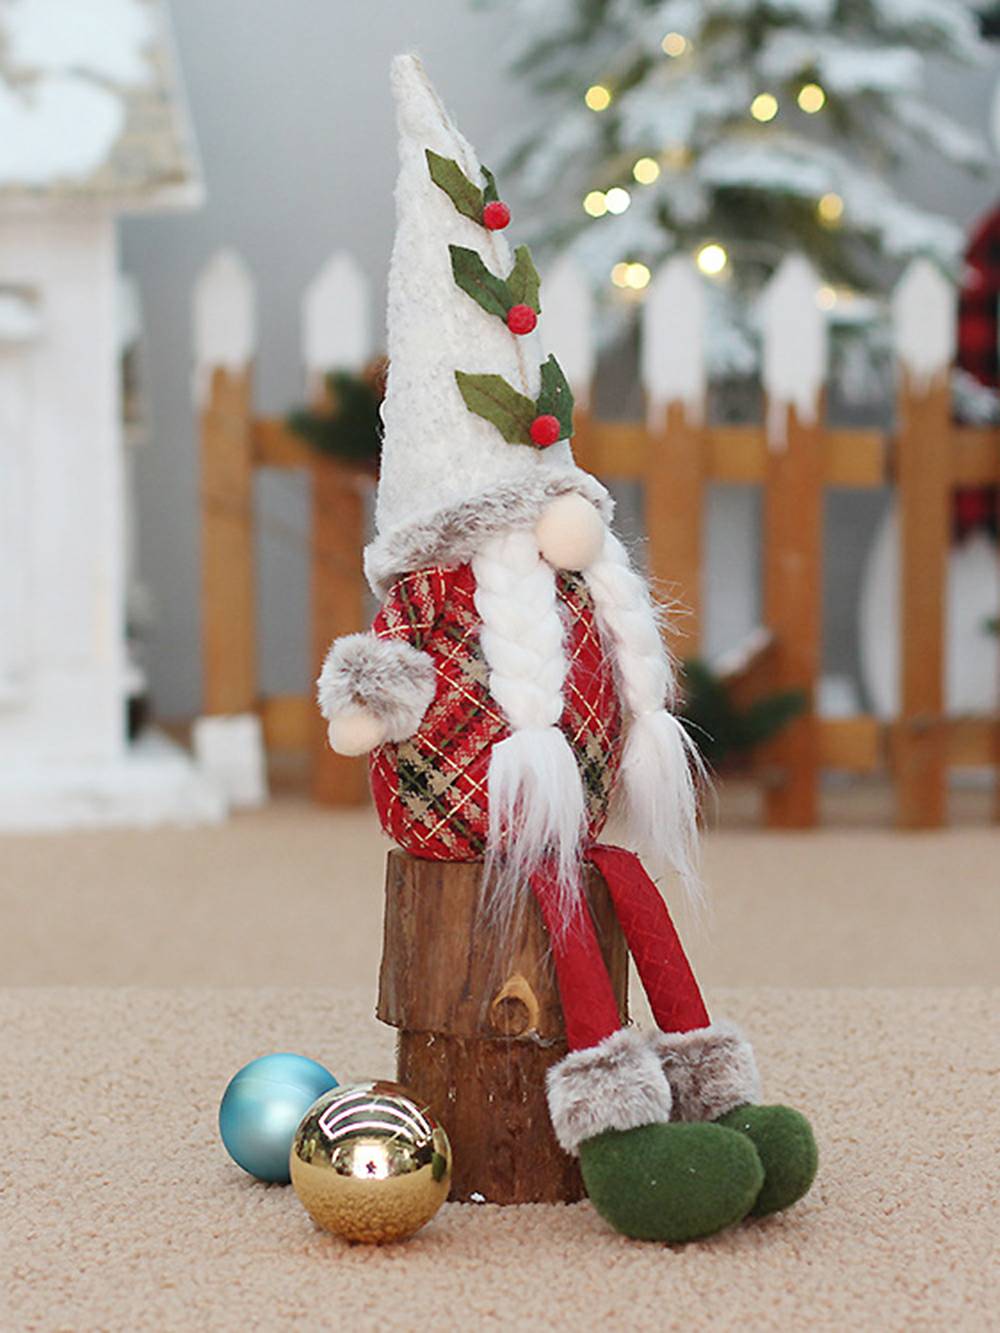 Rode geruite kerstboomkabouterpoppen met zit- en staande houdingen